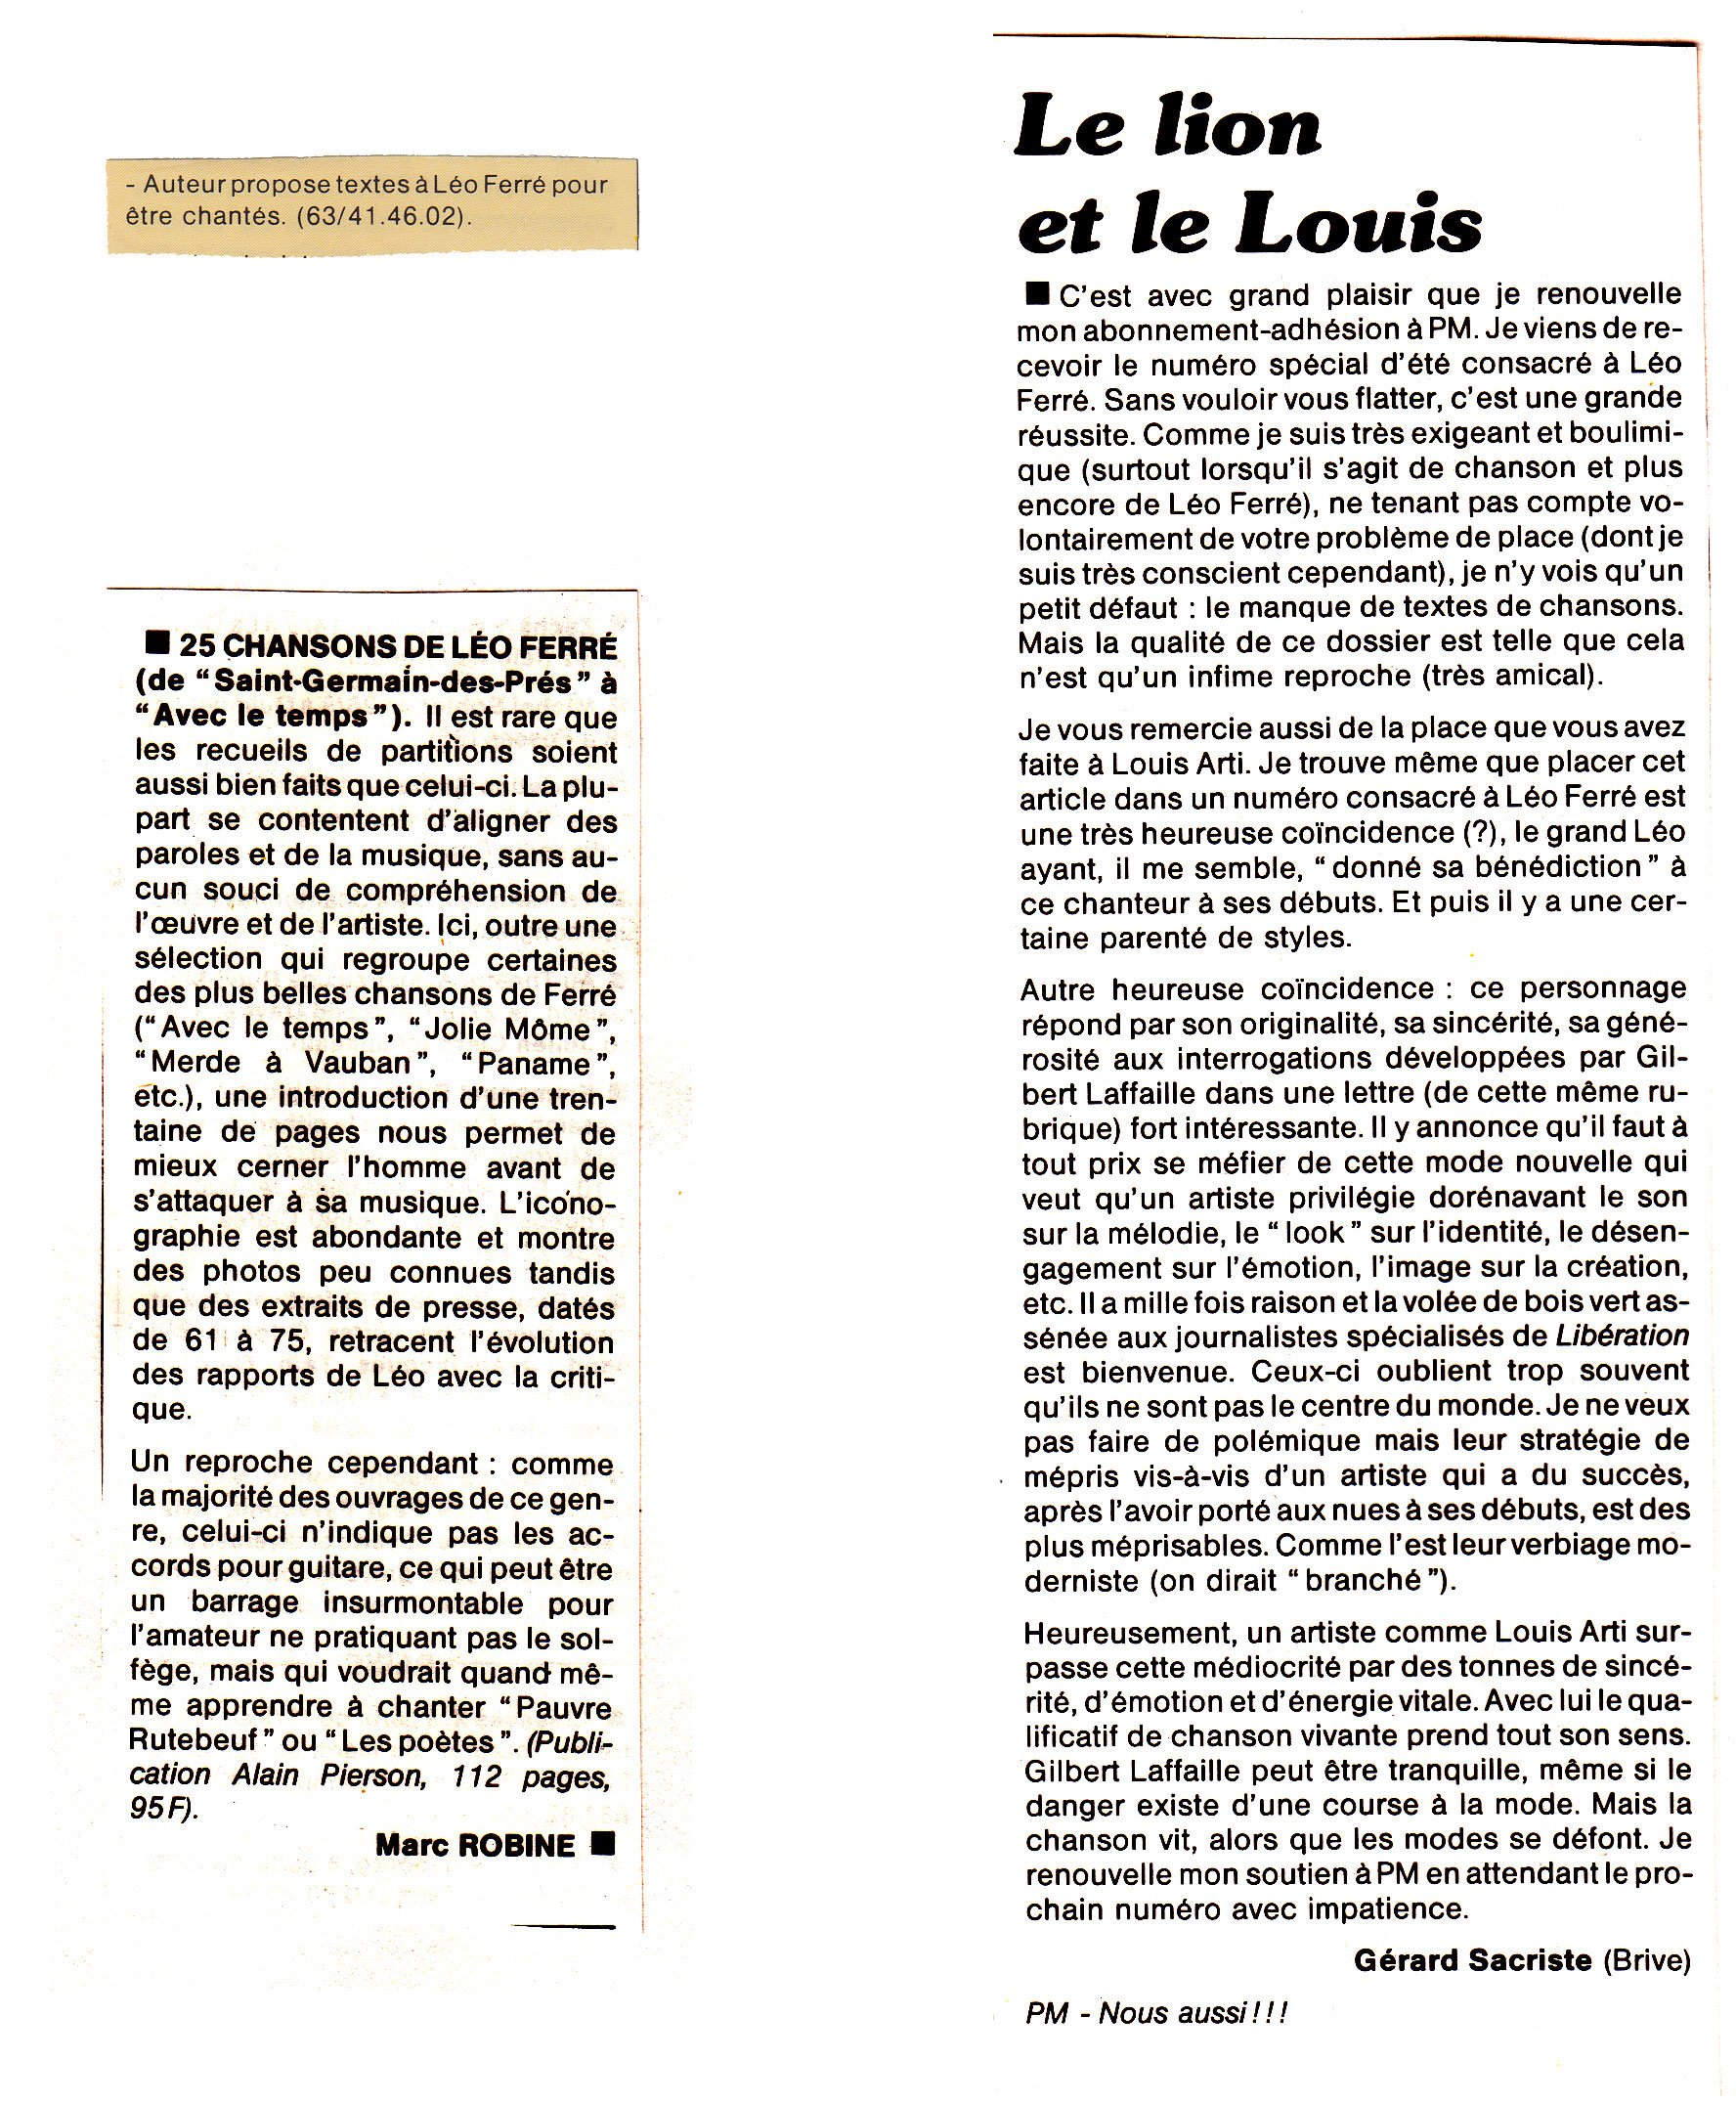 Léo Ferré - Paroles et musique n°52 de septembre 1985